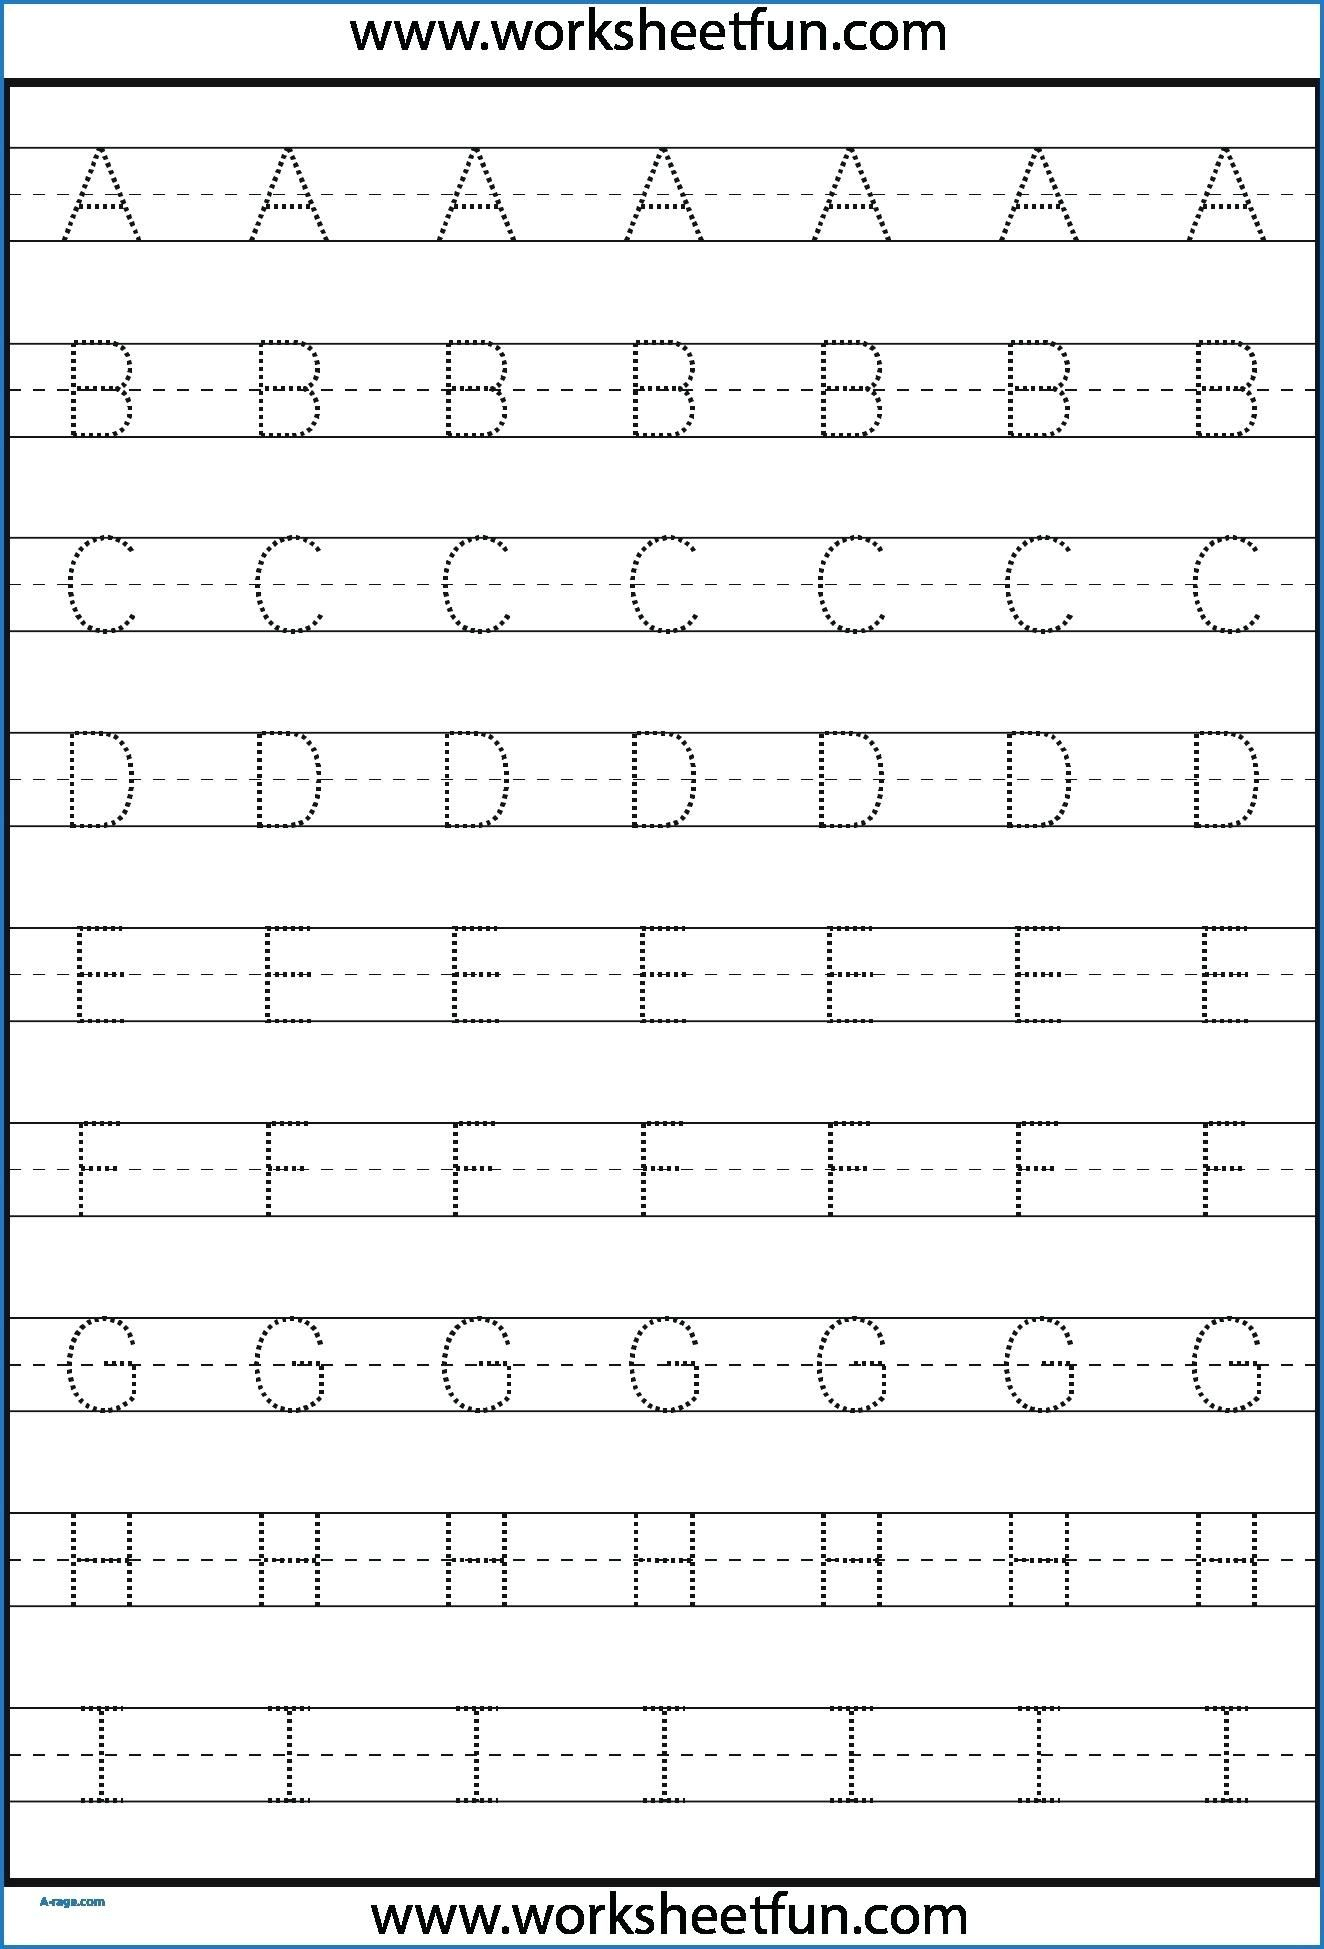 Kindergarten Letter Tracing Worksheets Pdf - Wallpaper Image with Letter Tracing Worksheets For Adults